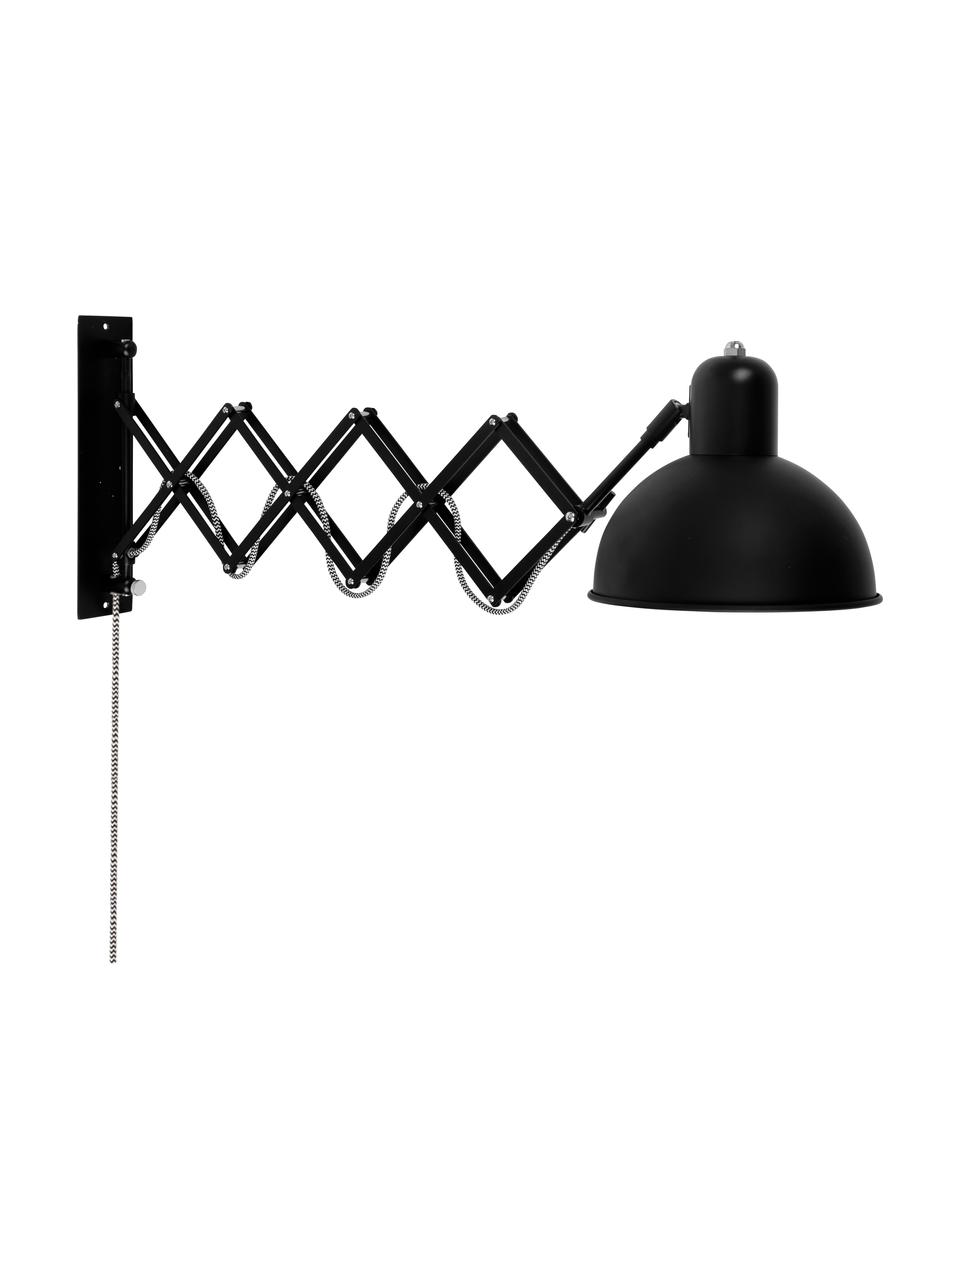 Grosse Ausziehbare Wandleuchte Aberdeen mit Stecker, Lampenschirm: Metall, lackiert, Gestell: Metall, lackiert, Schwarz, T 60 x H 27 cm